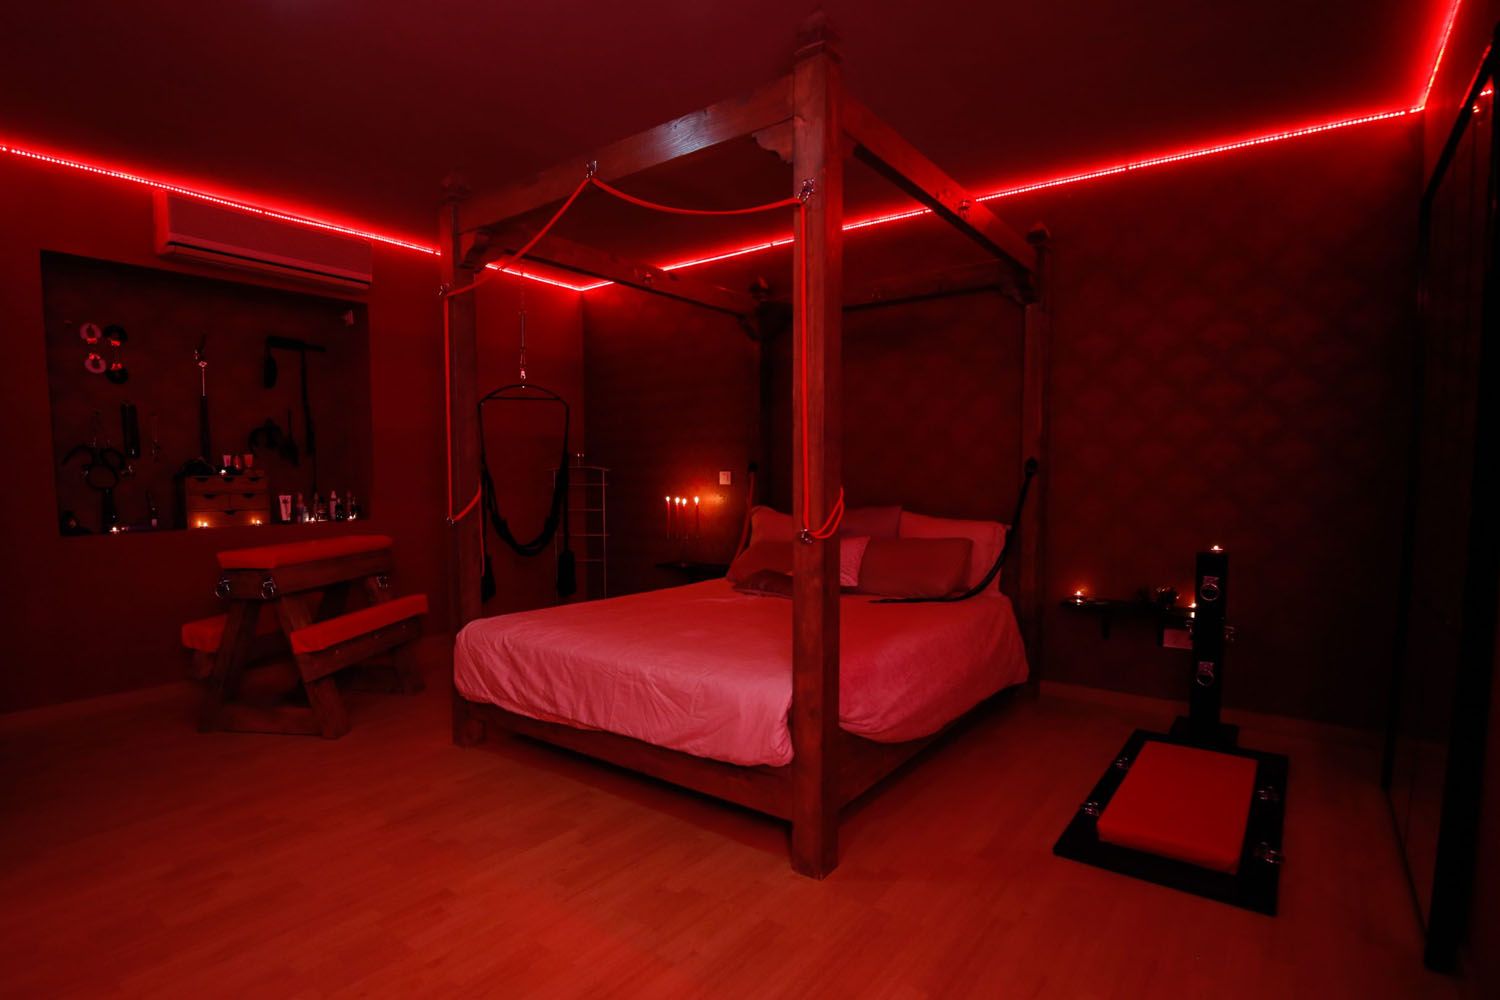 La habitación roja de Luxury Agency Dolls con mobiliario BDSM y juguetes sexuales / LAD